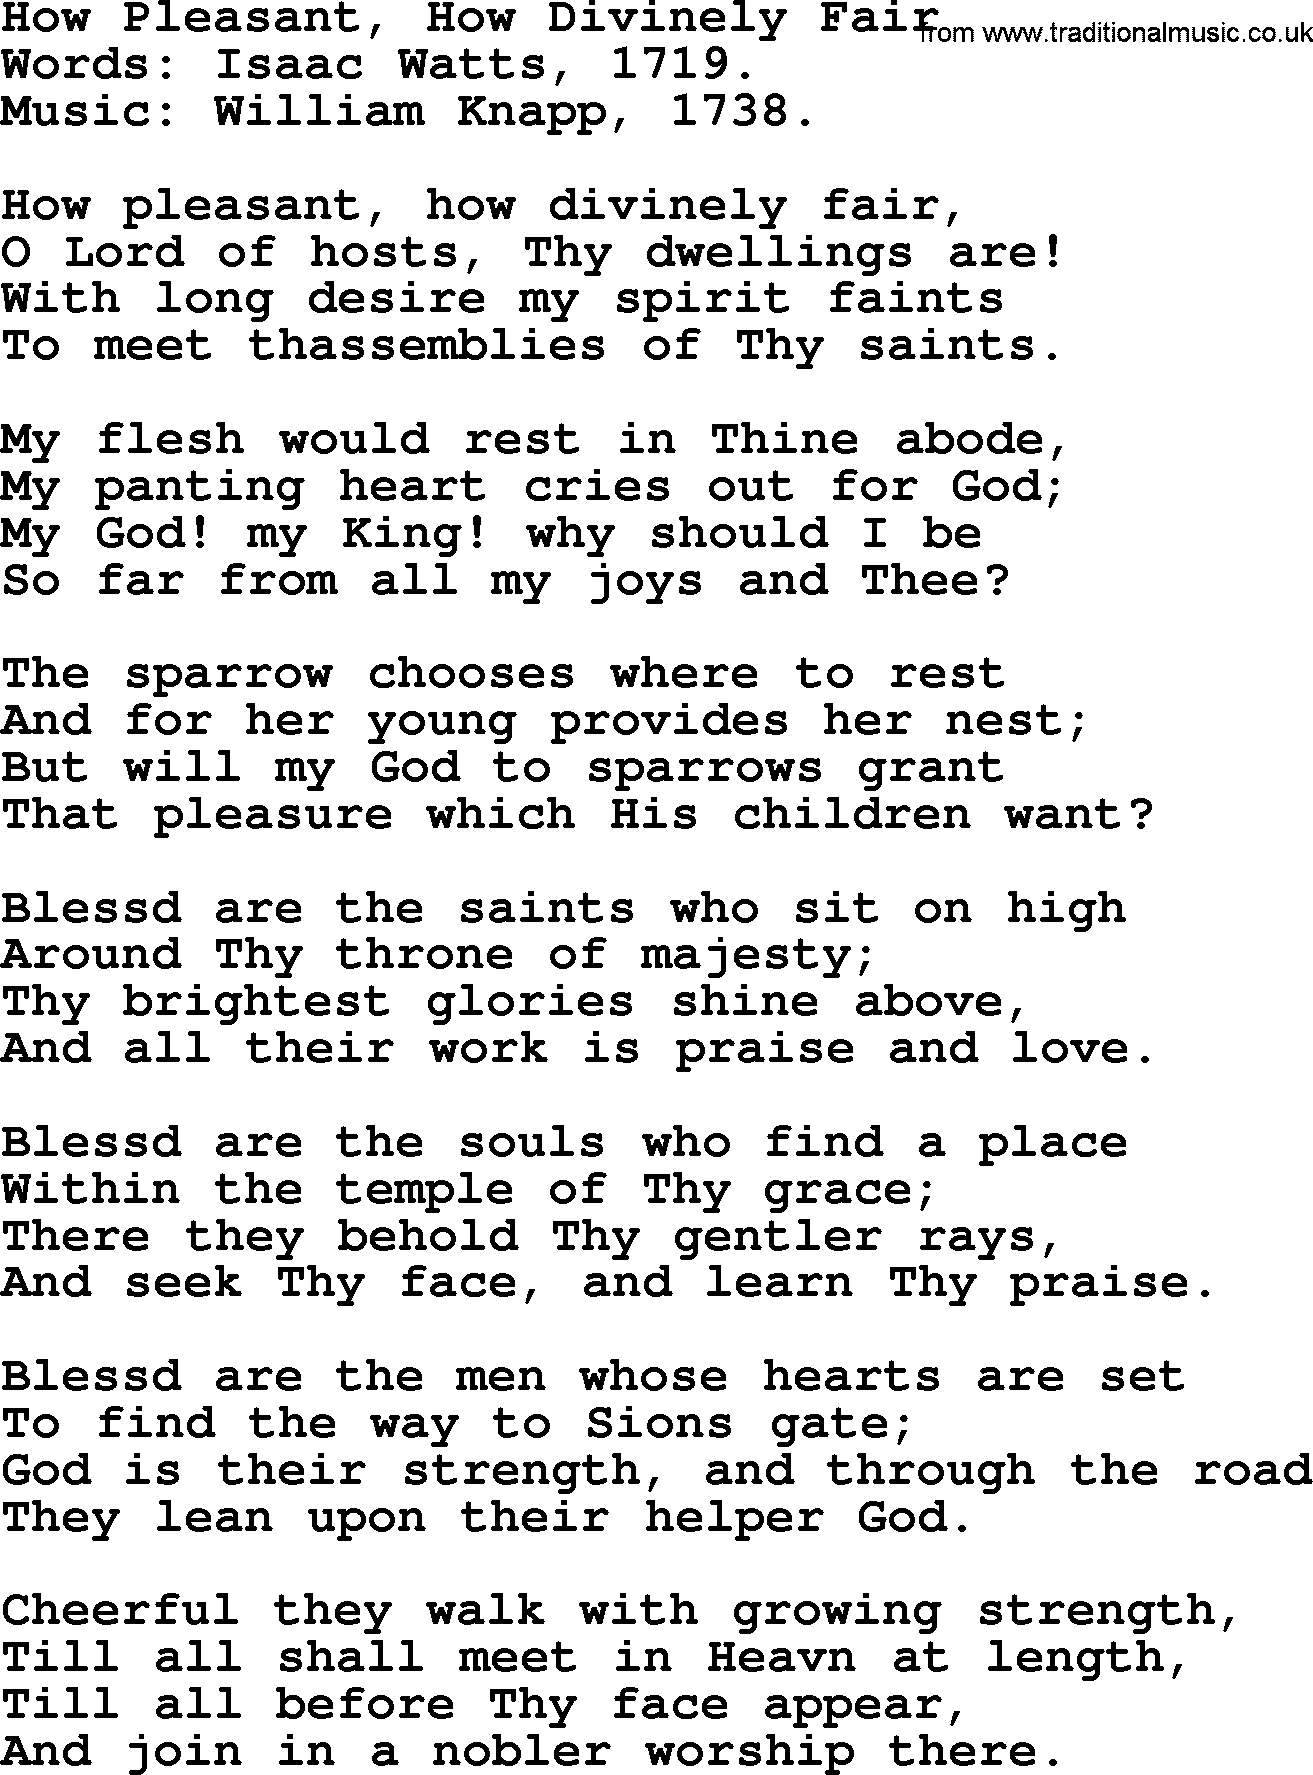 Isaac Watts Christian hymn: How Pleasant, How Divinely Fair- lyricss